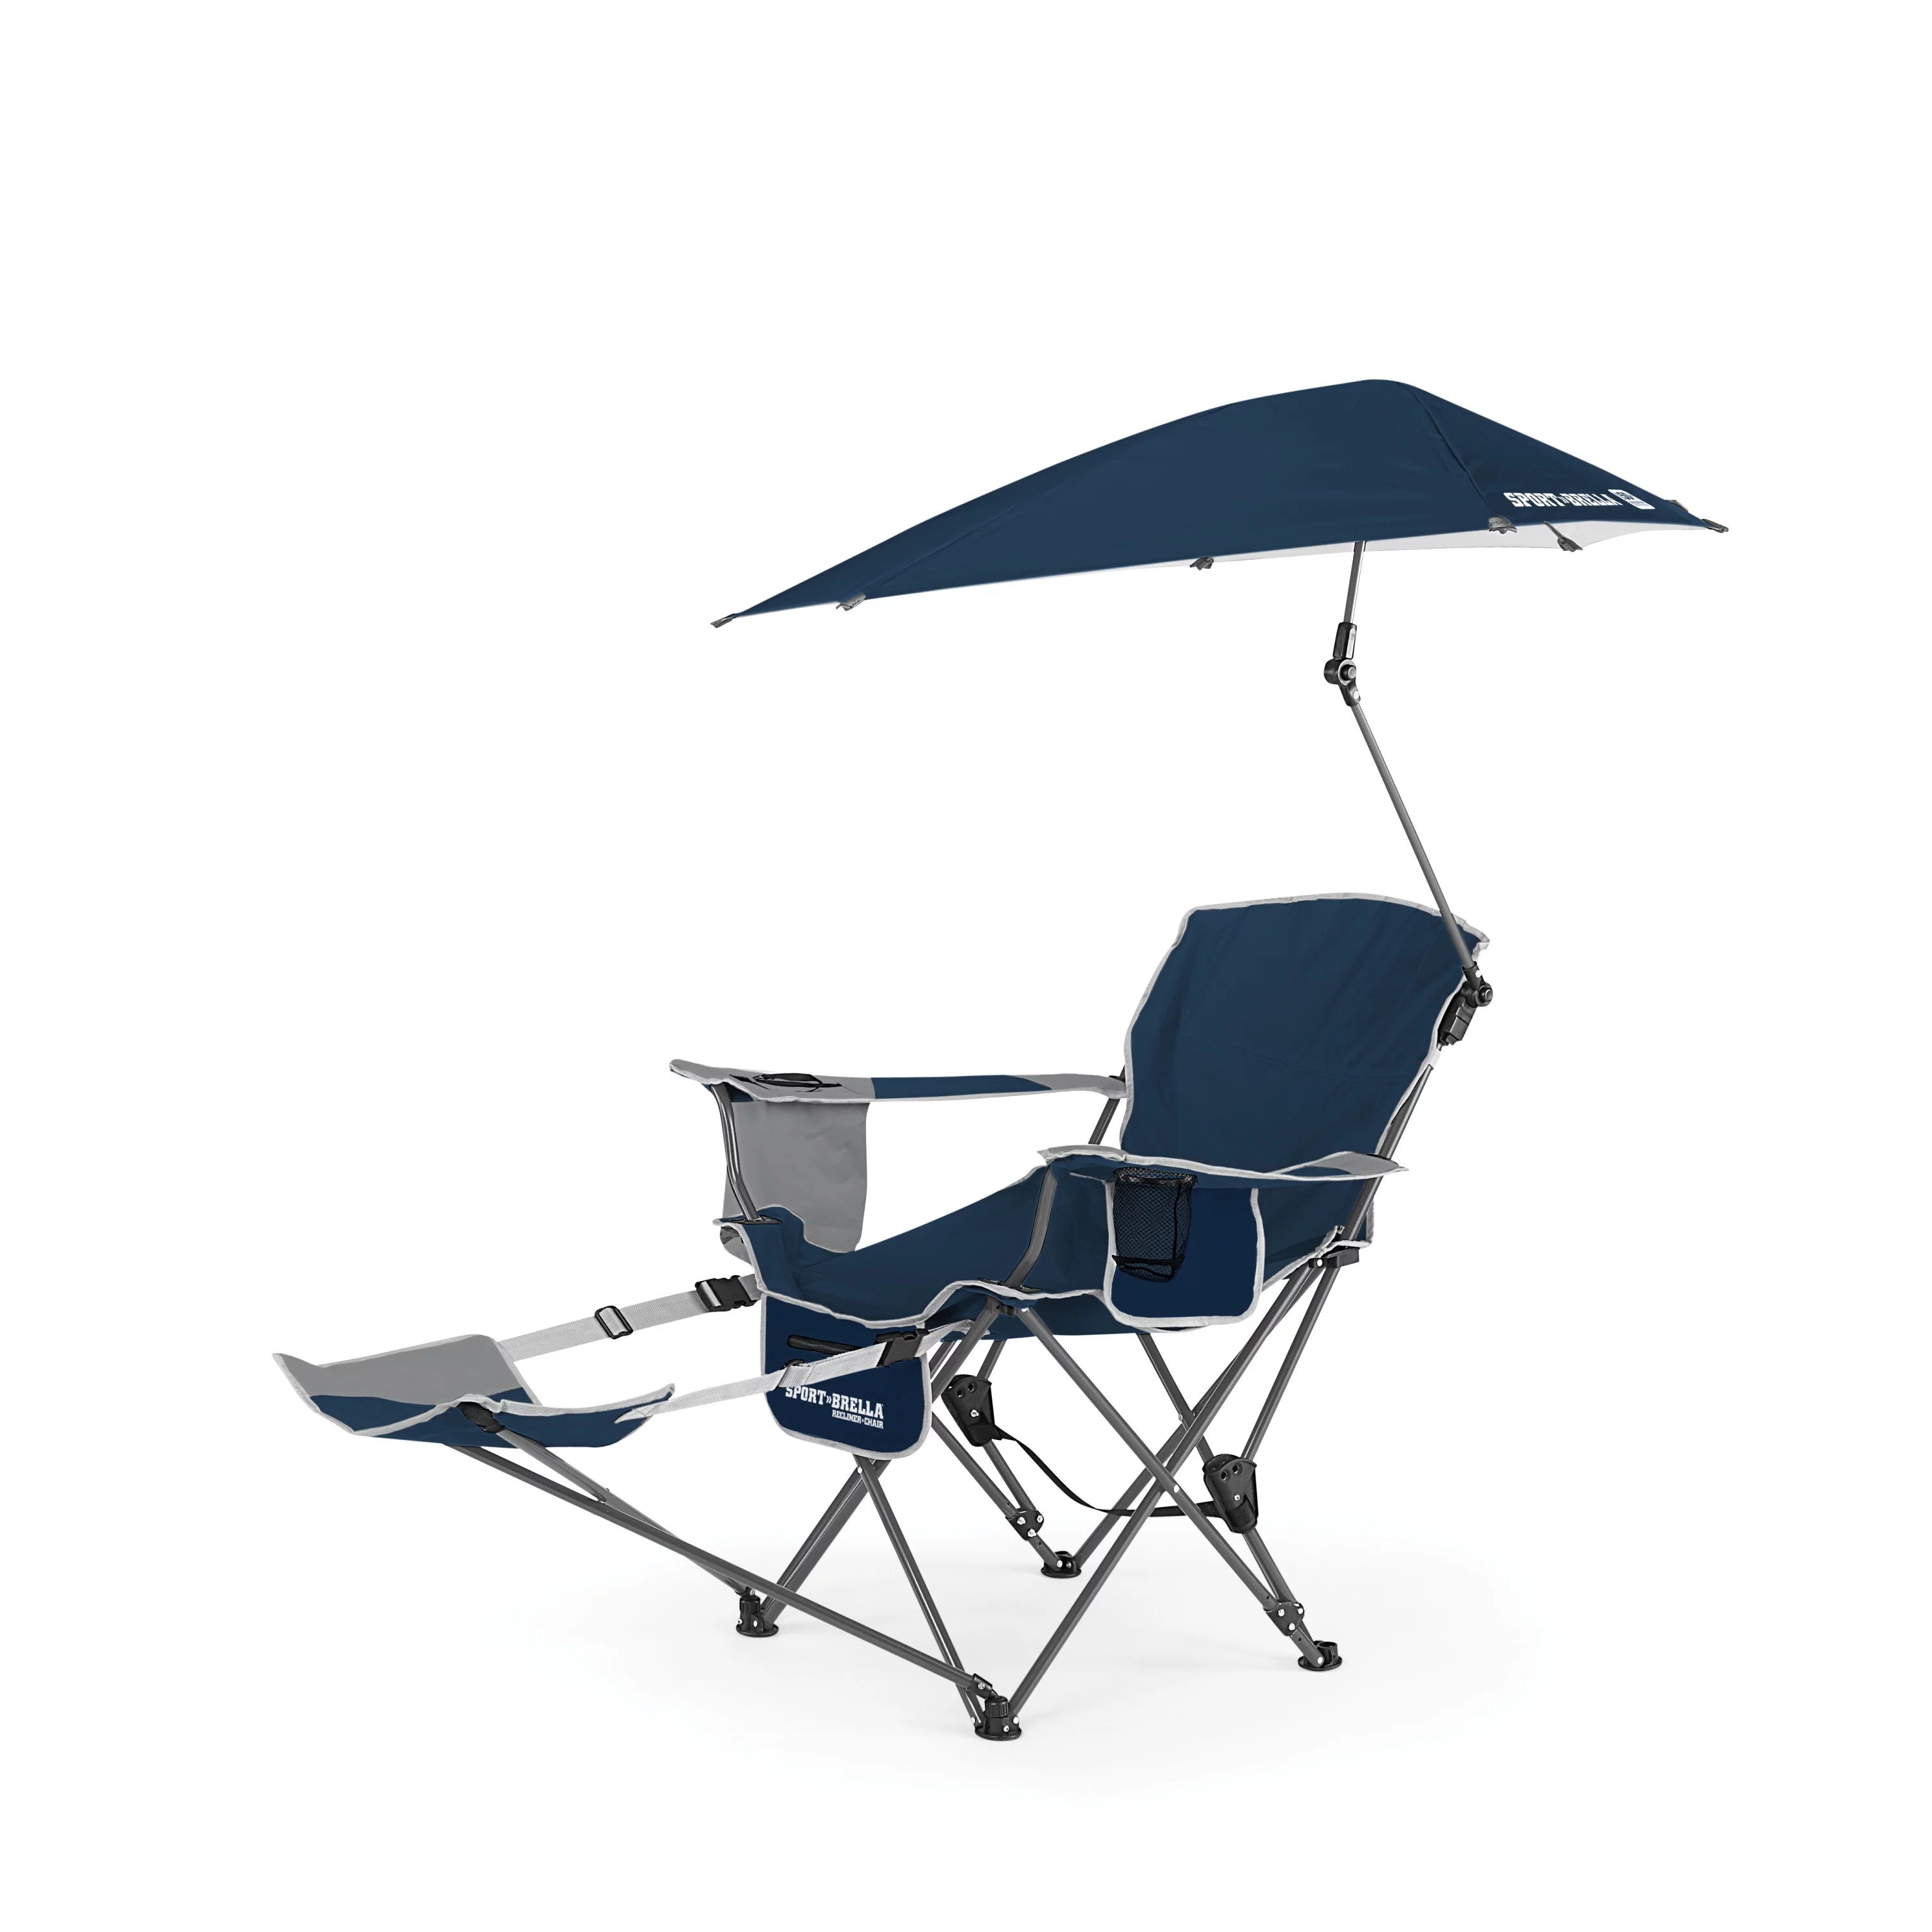 Sport-Briella Camping Chair, Blue